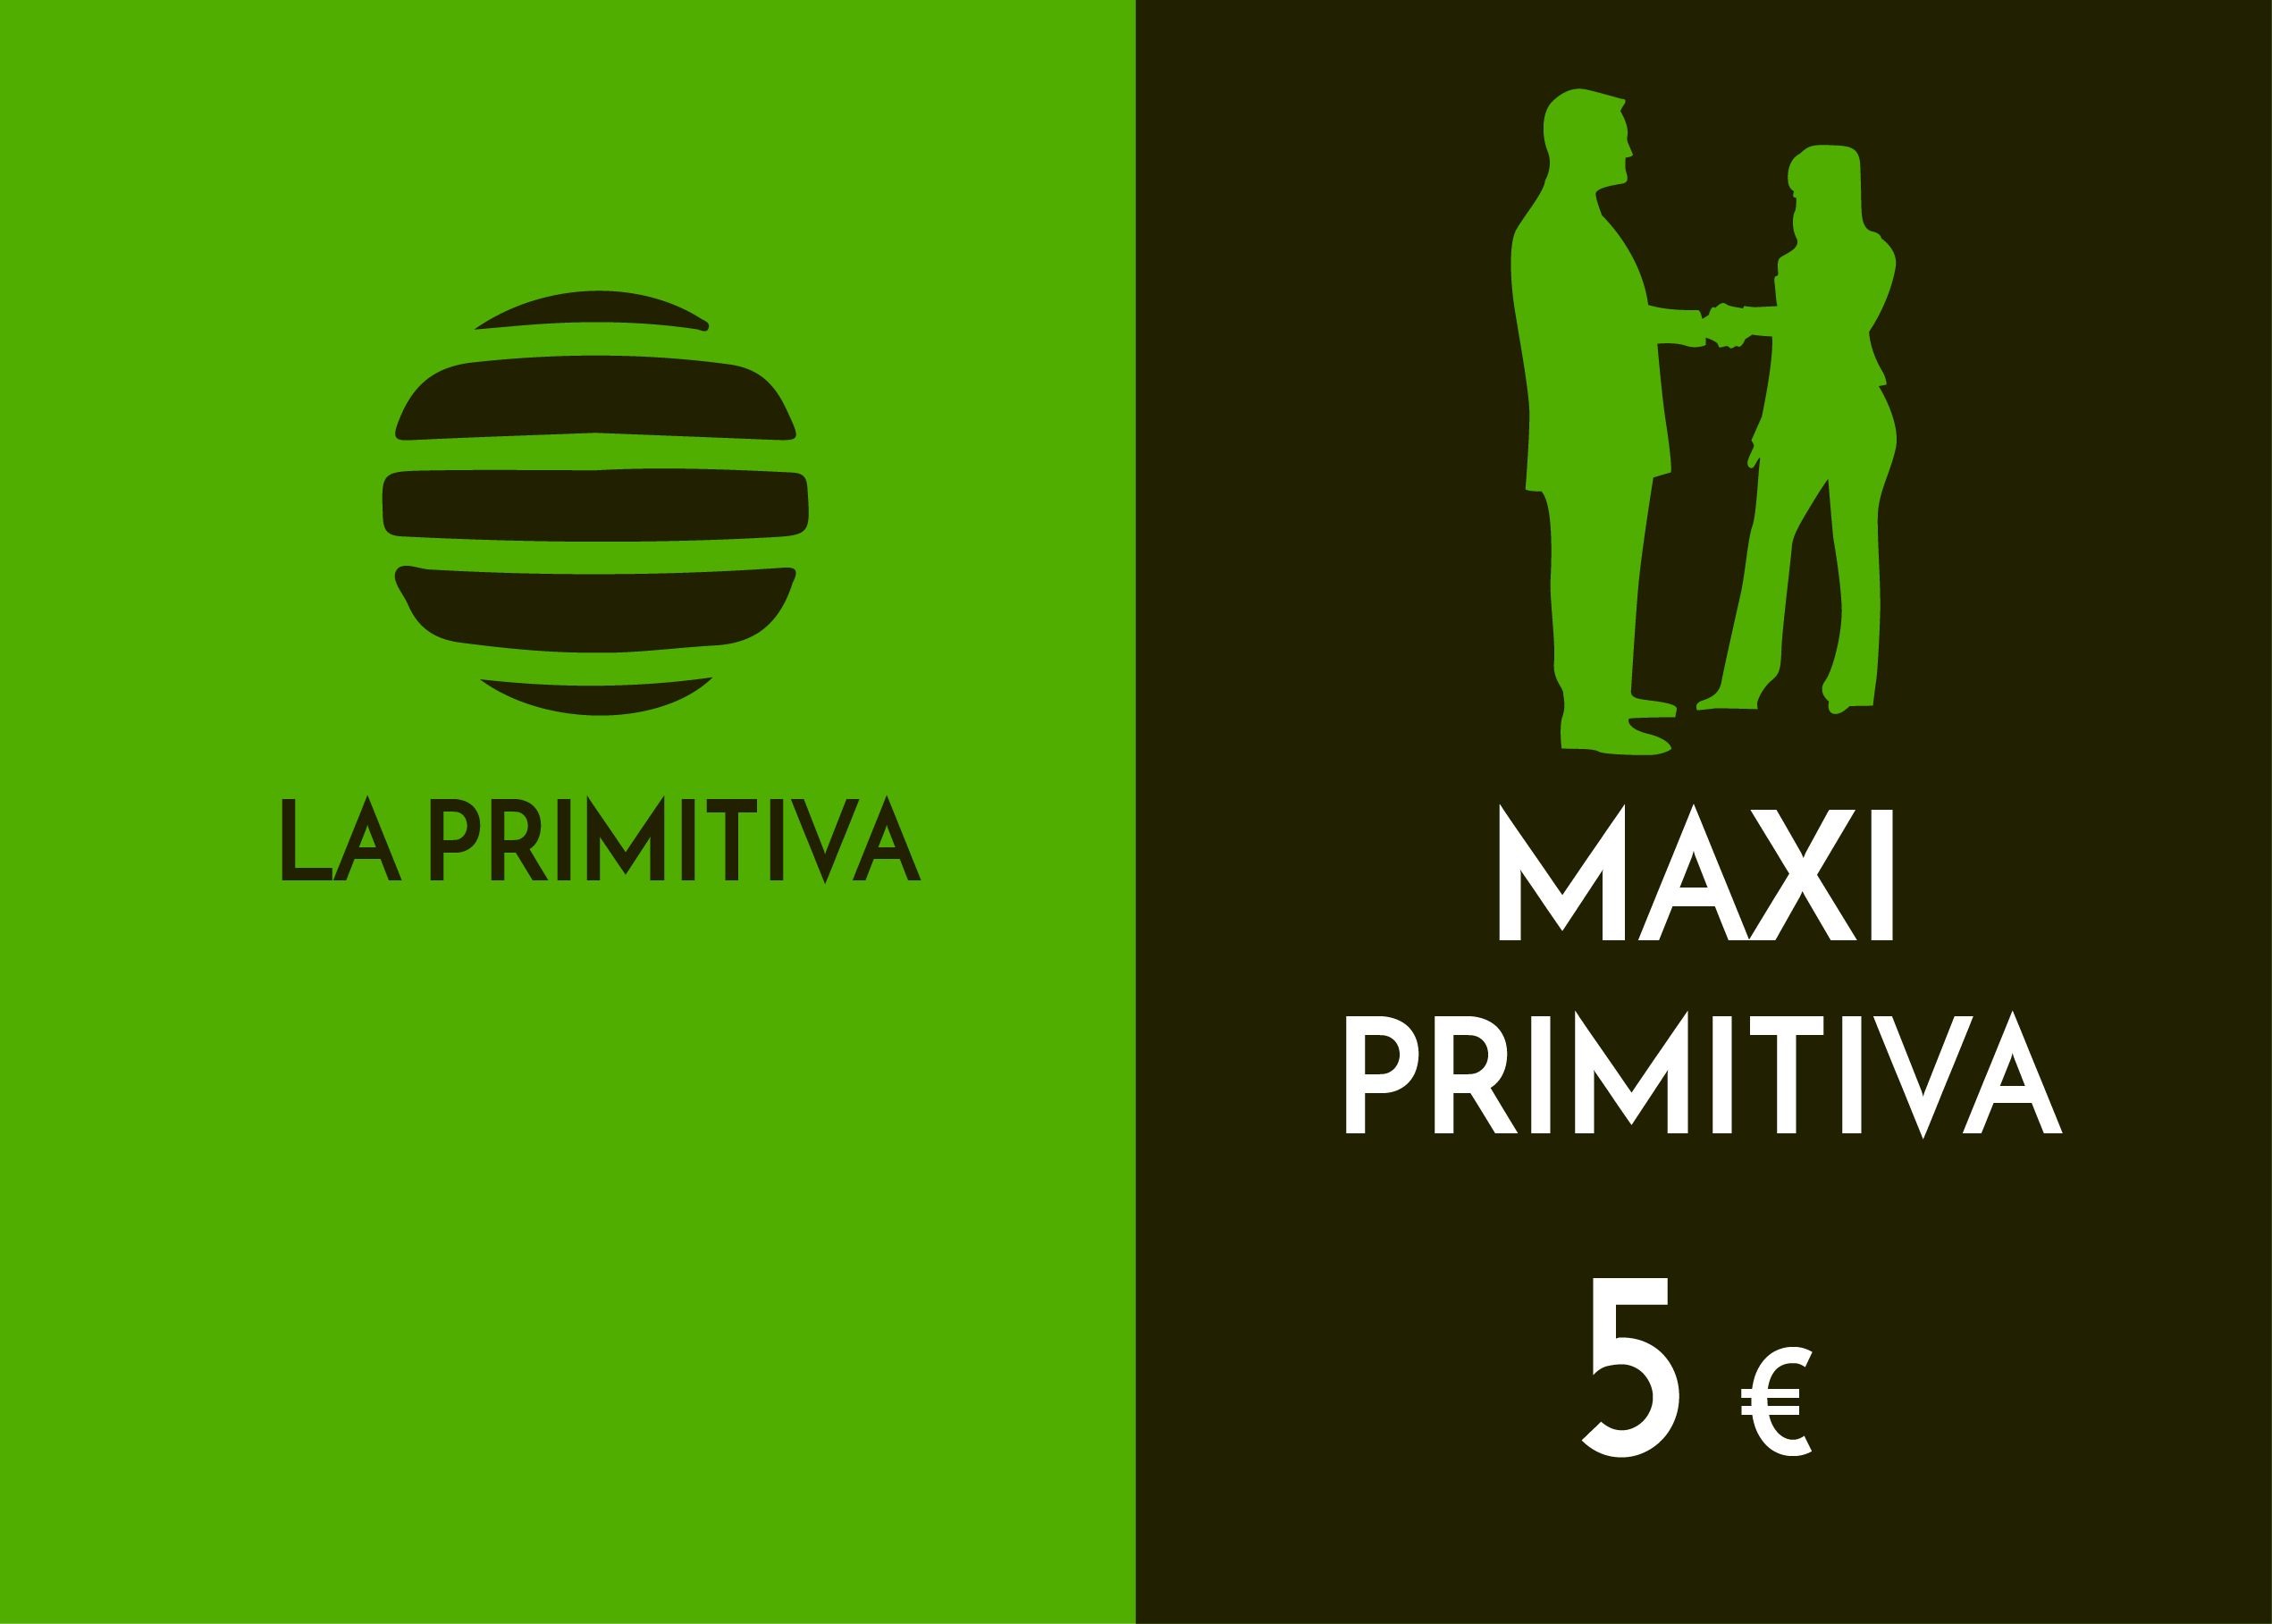 Club - maxiprimitiva - 5,00 Euros